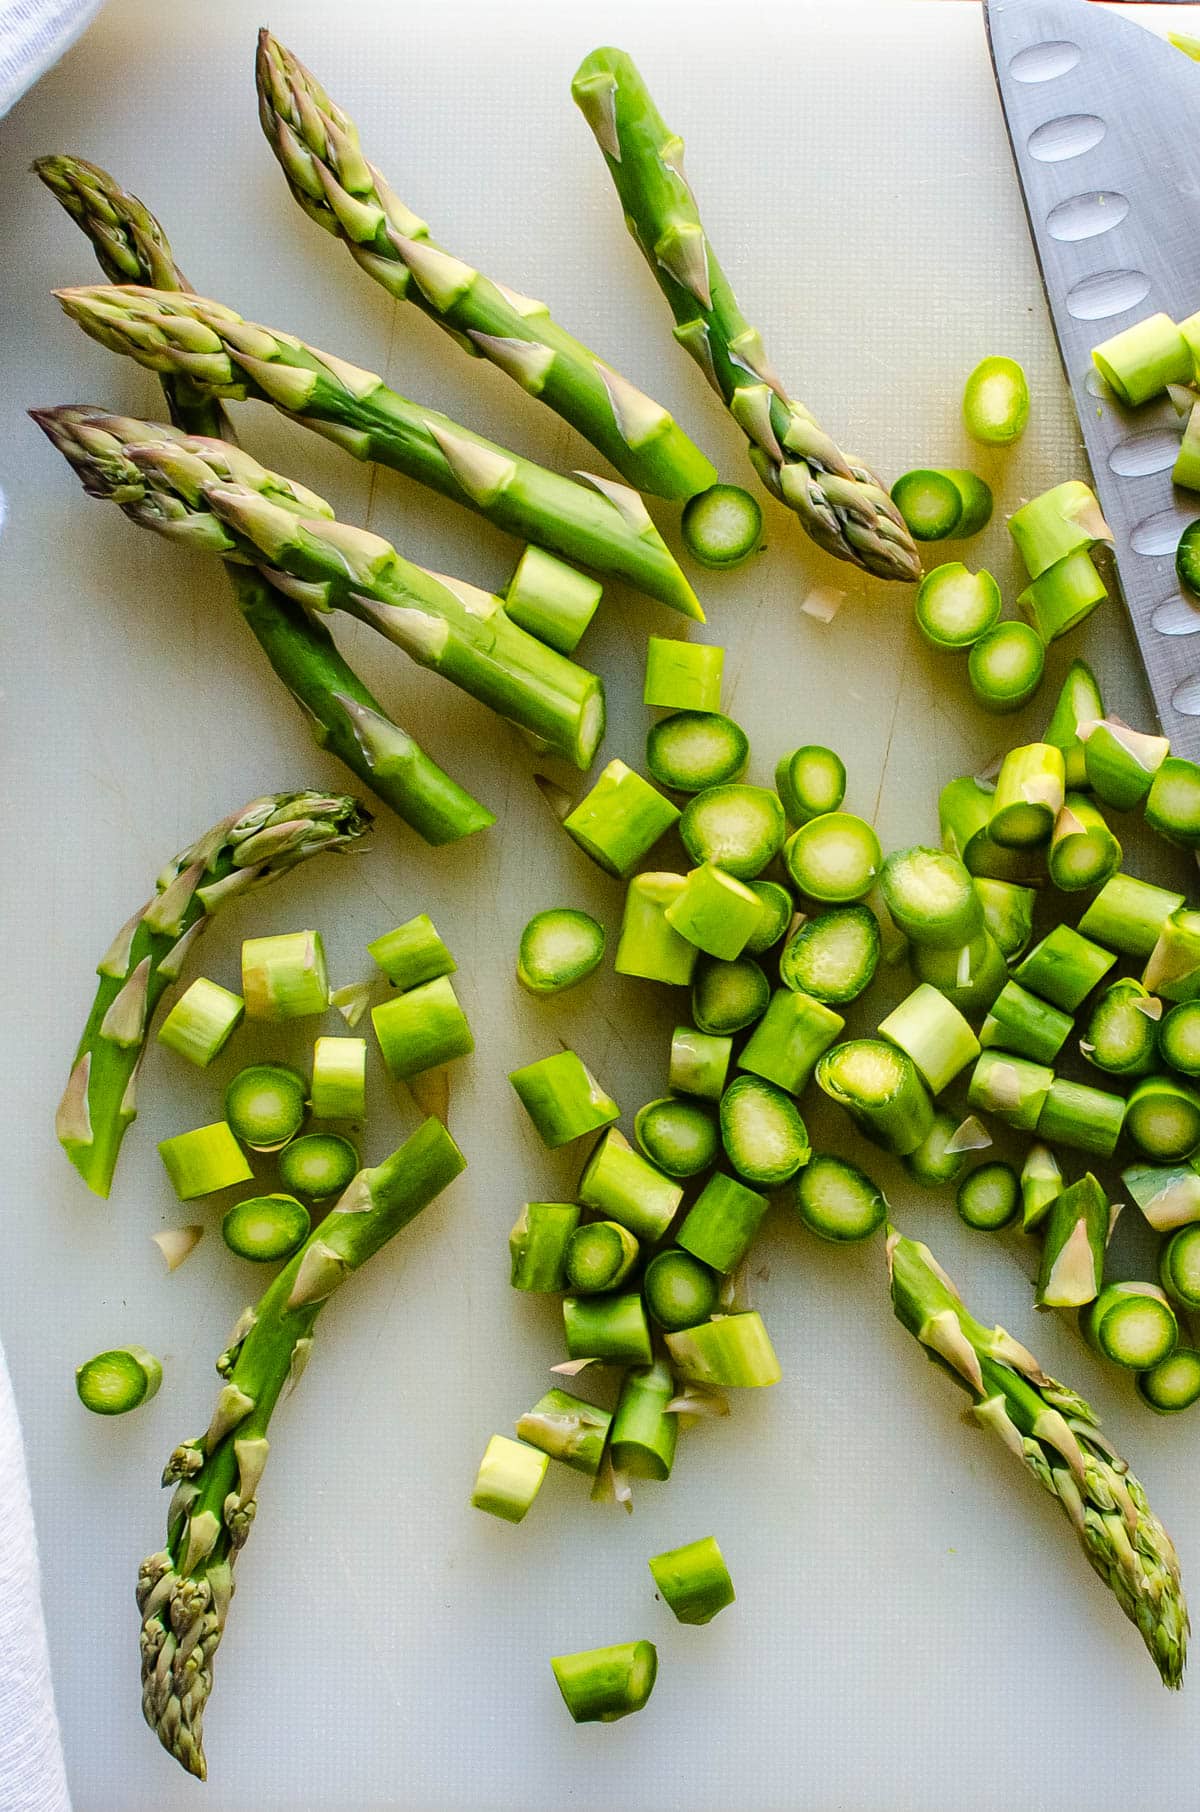 Chopping fresh asparagus spears to blanche.